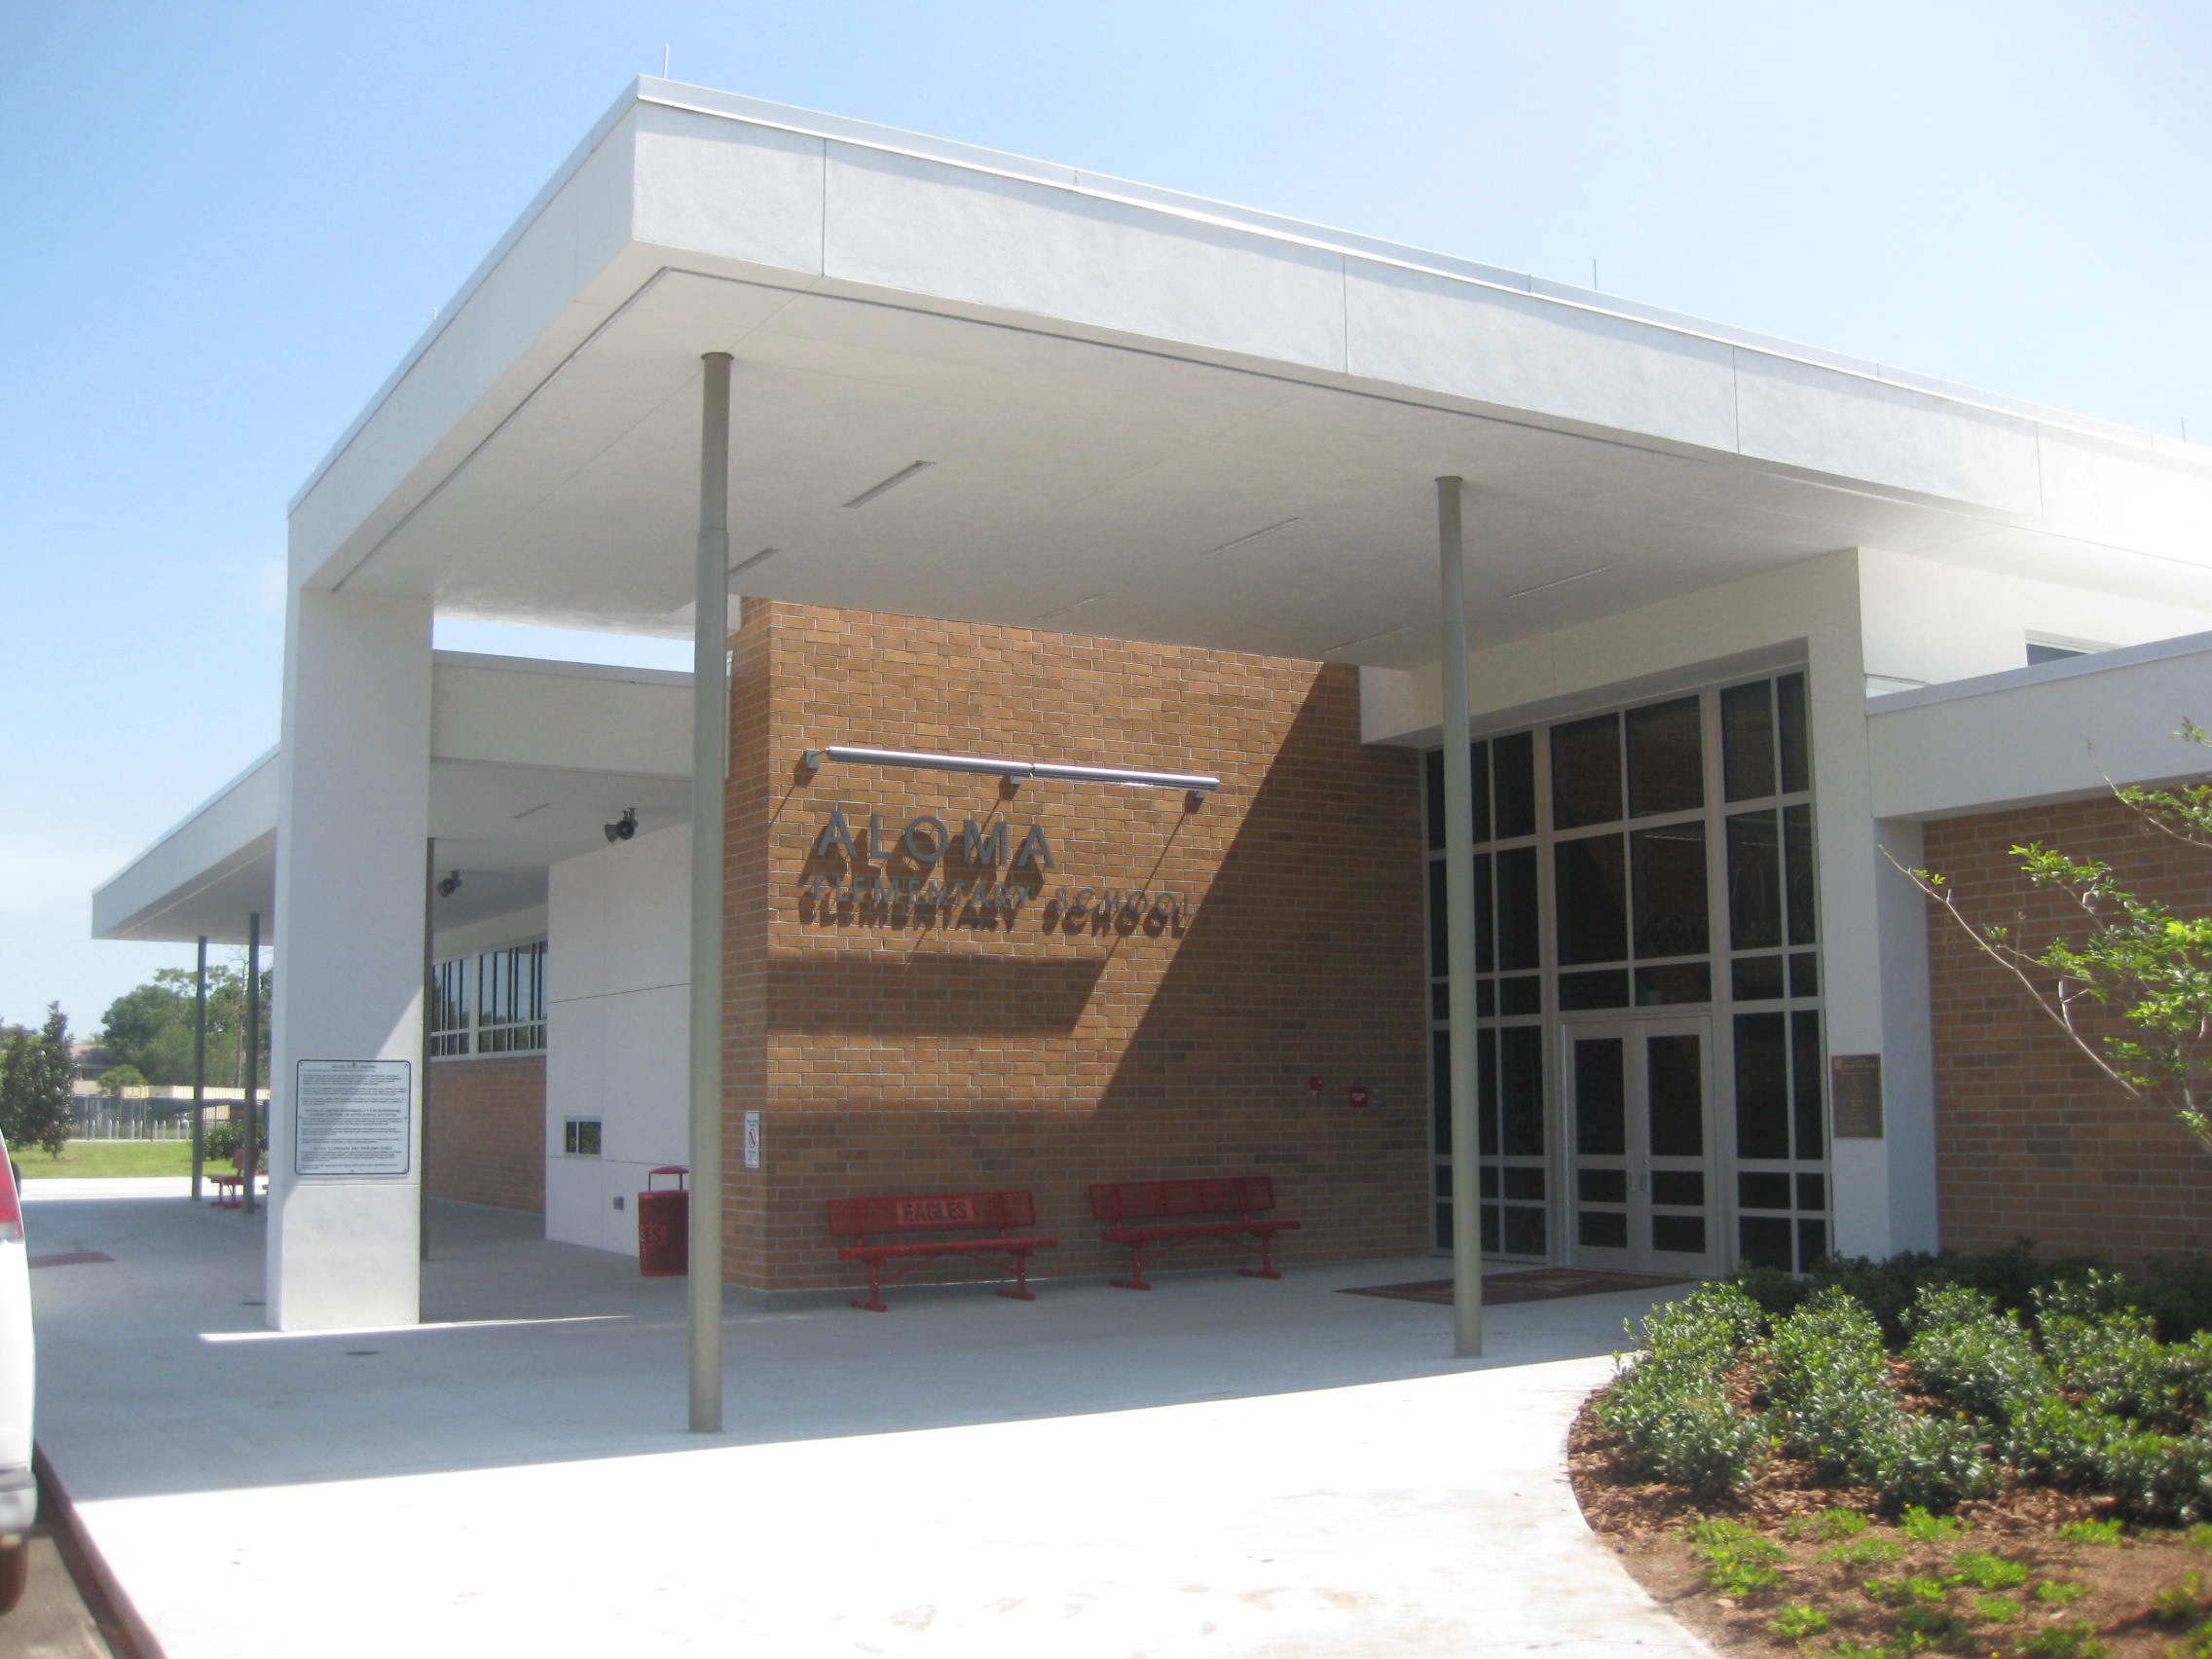 Aloma Elementary Main Office